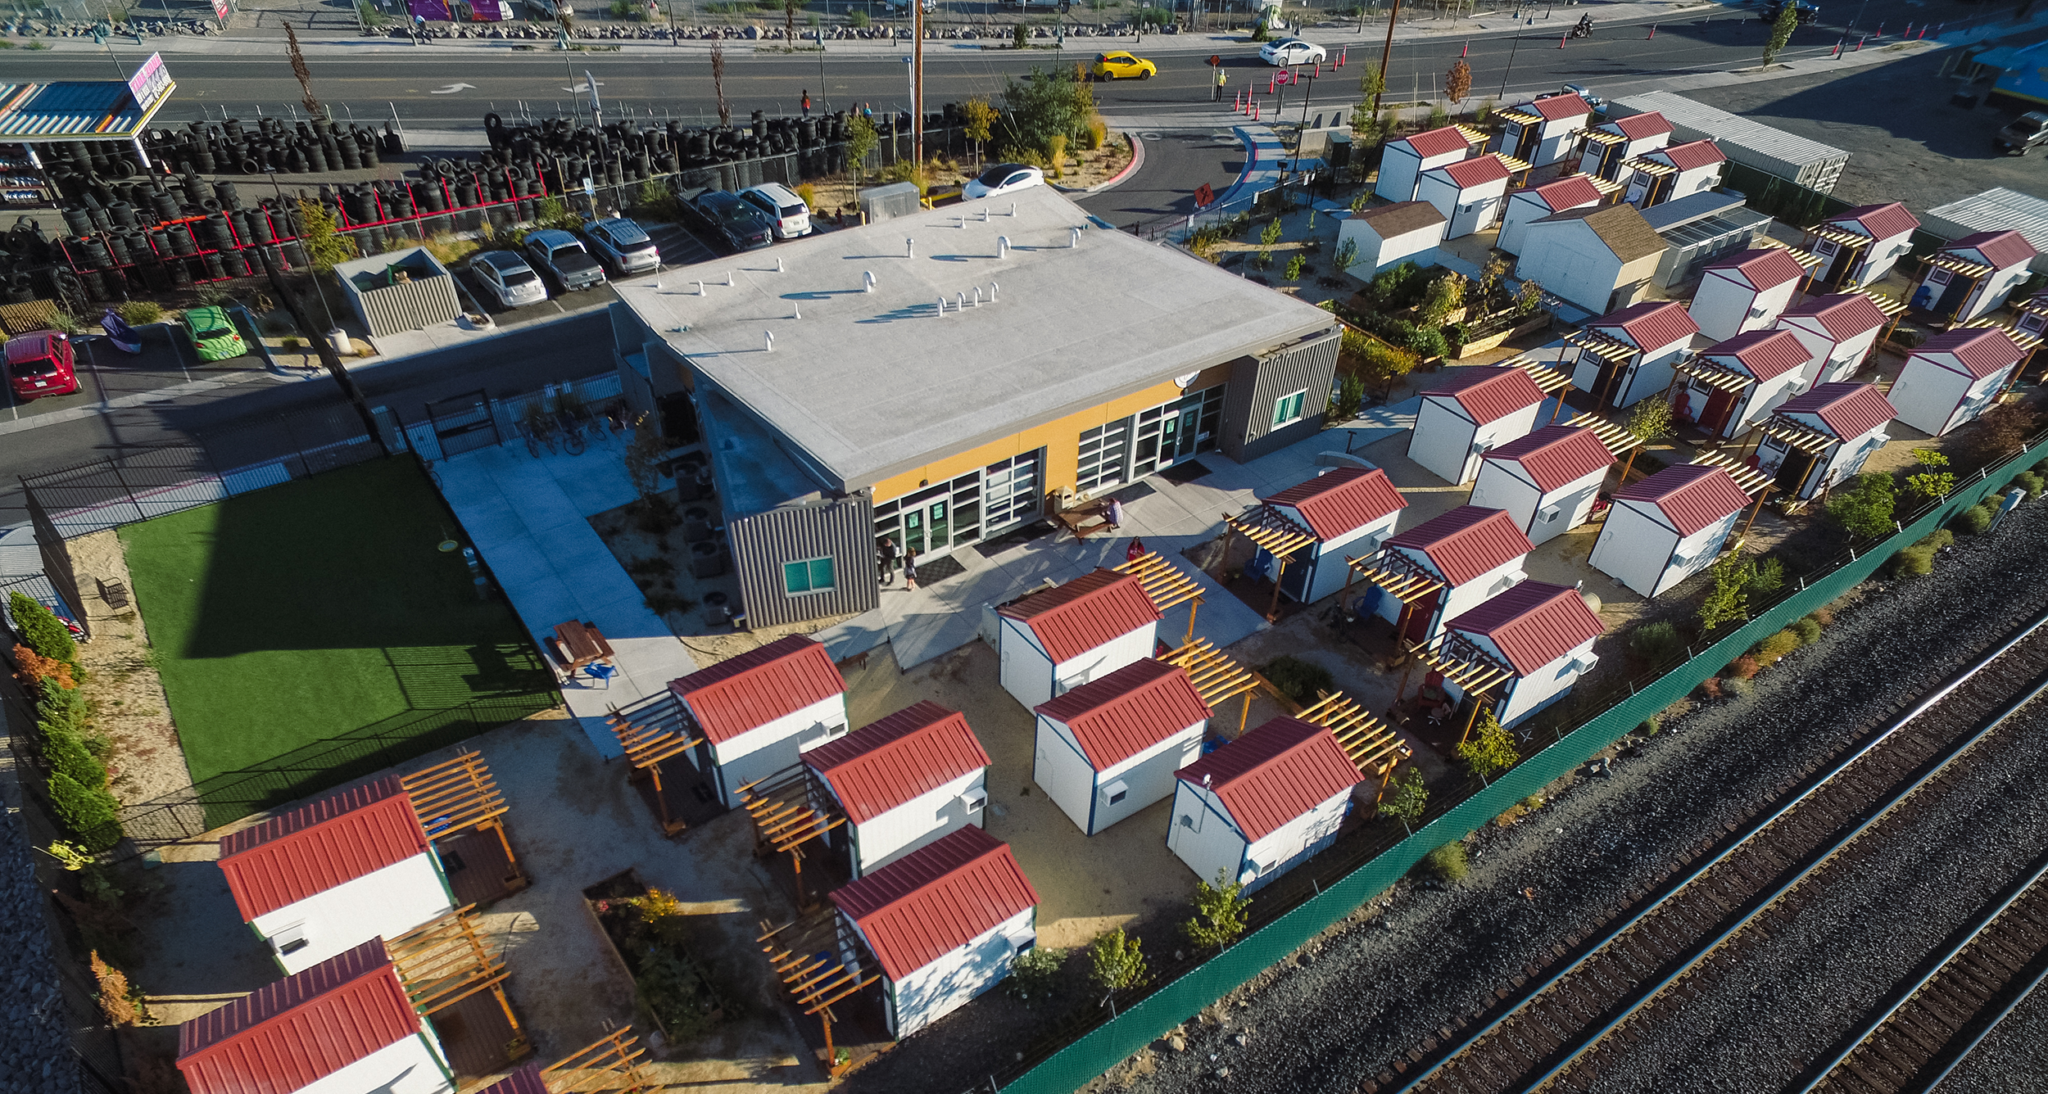 Aerial view of Hope Springs community